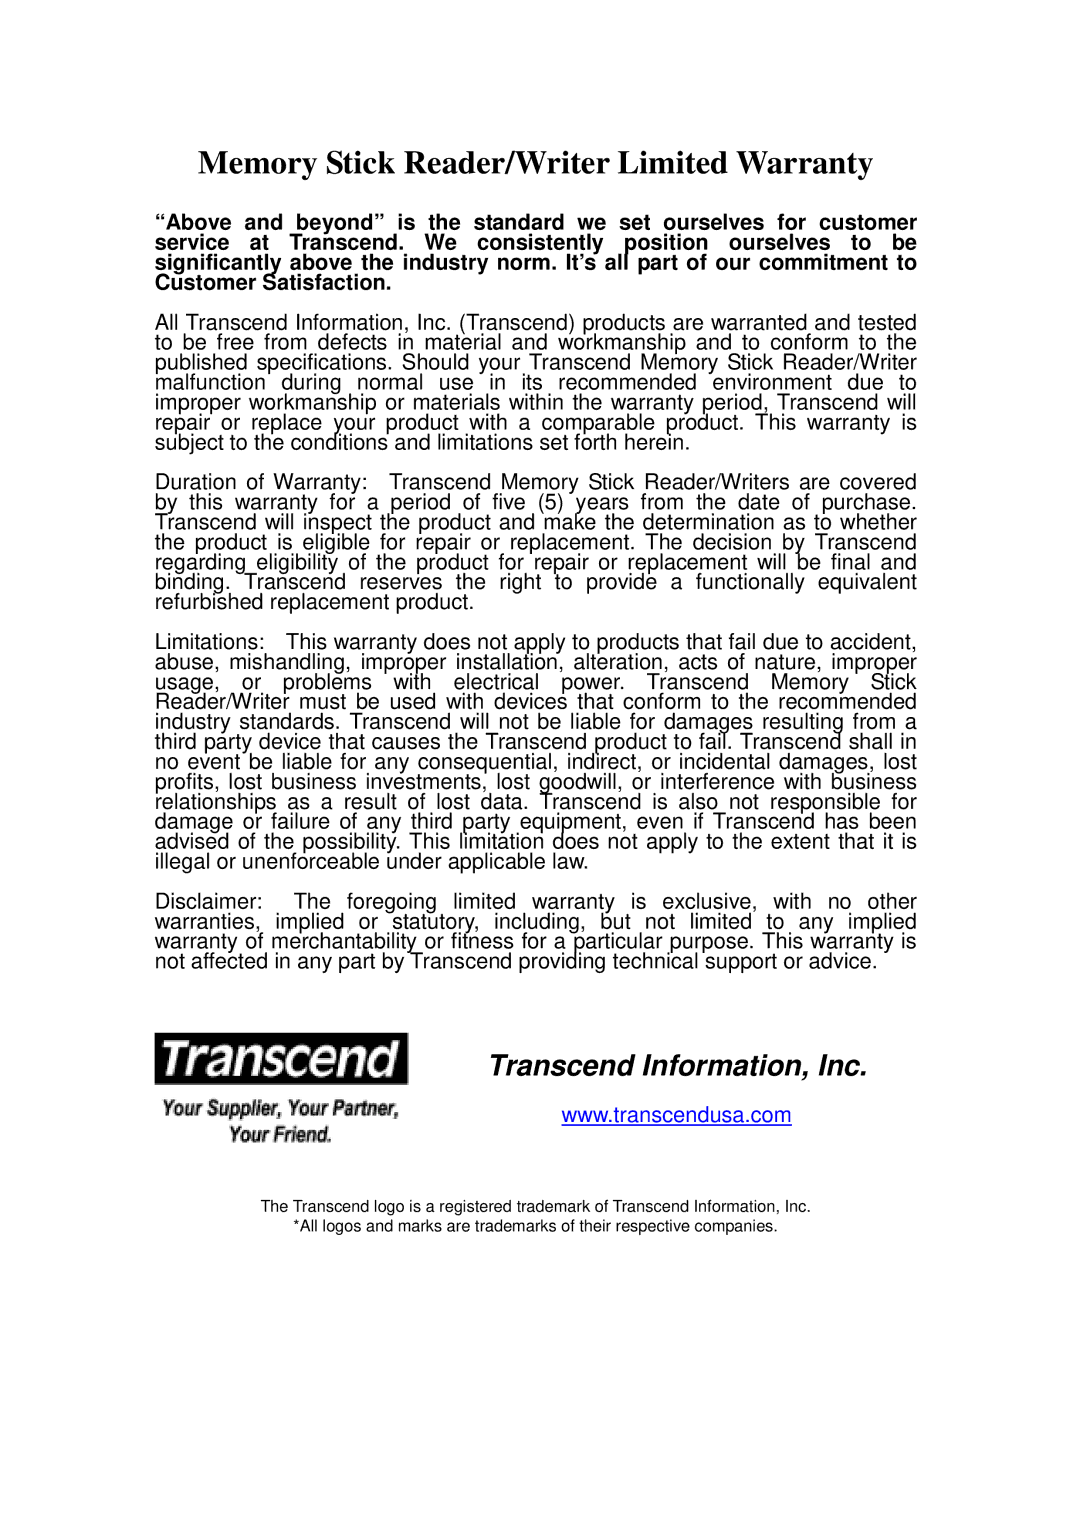 Transcend Information user manual Memory Stick Reader/Writer Limited Warranty 